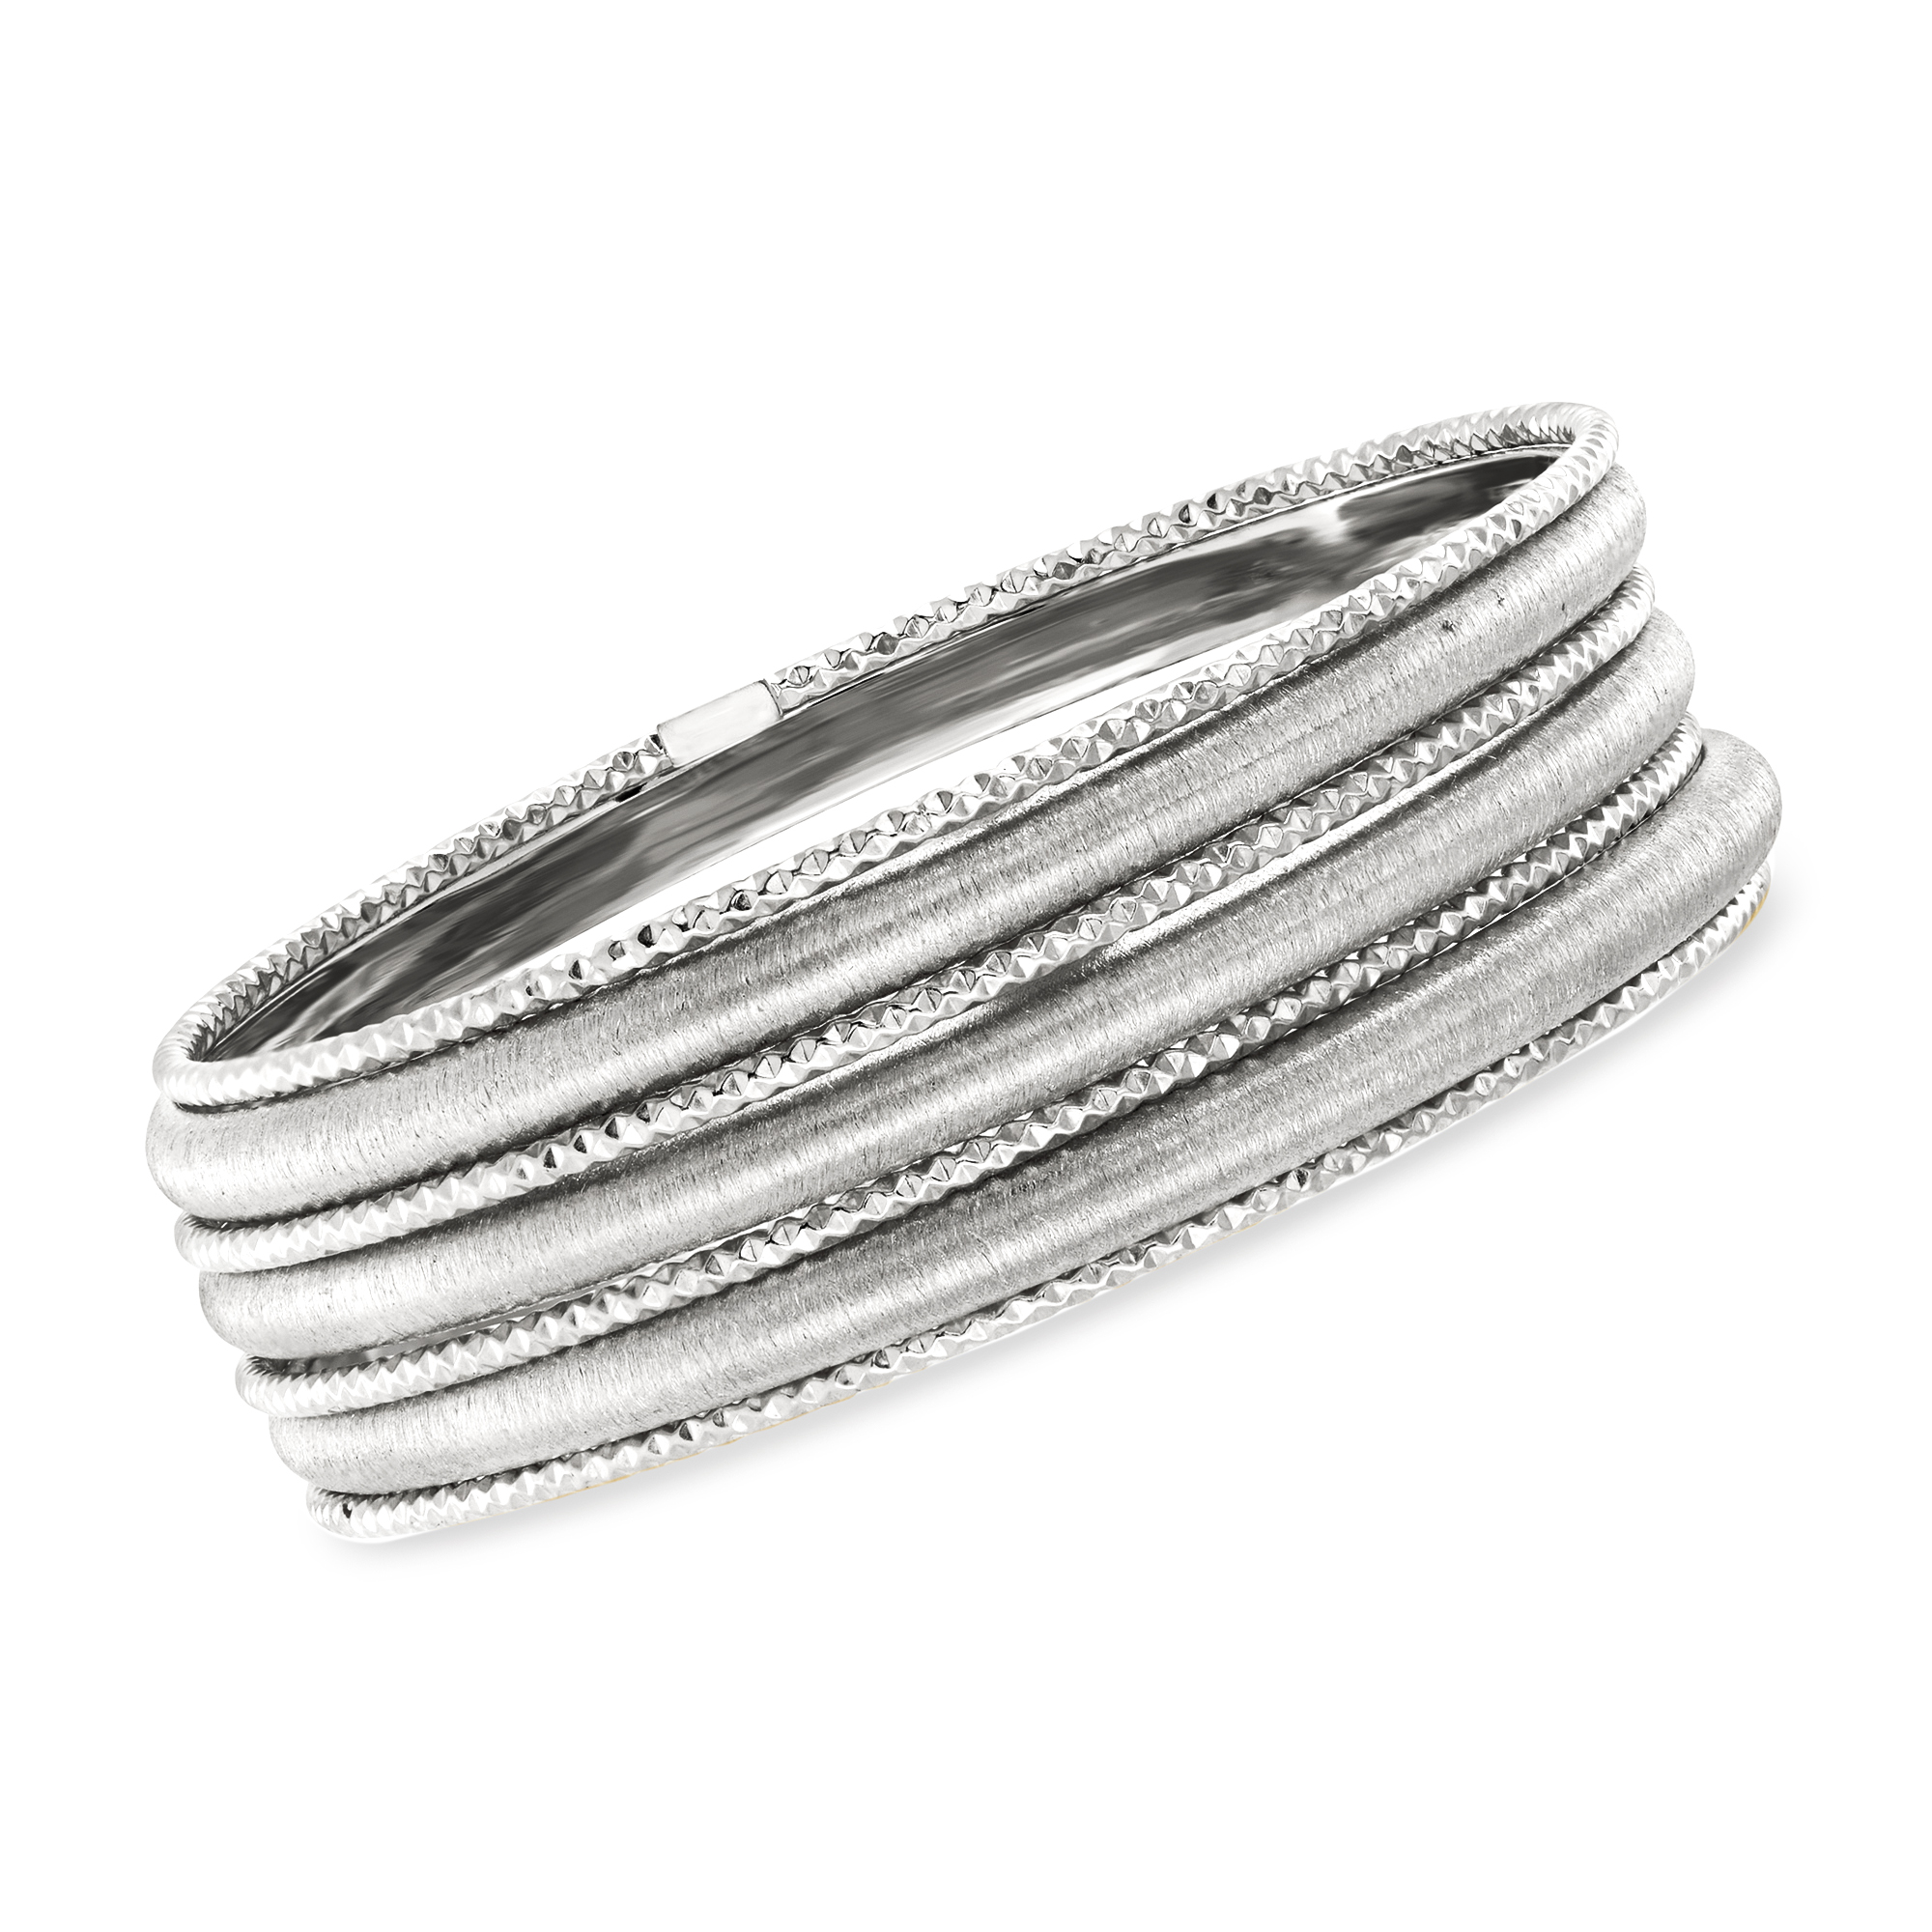 Italian Sterling Silver Jewelry Set: Seven Bangle Bracelets | Ross